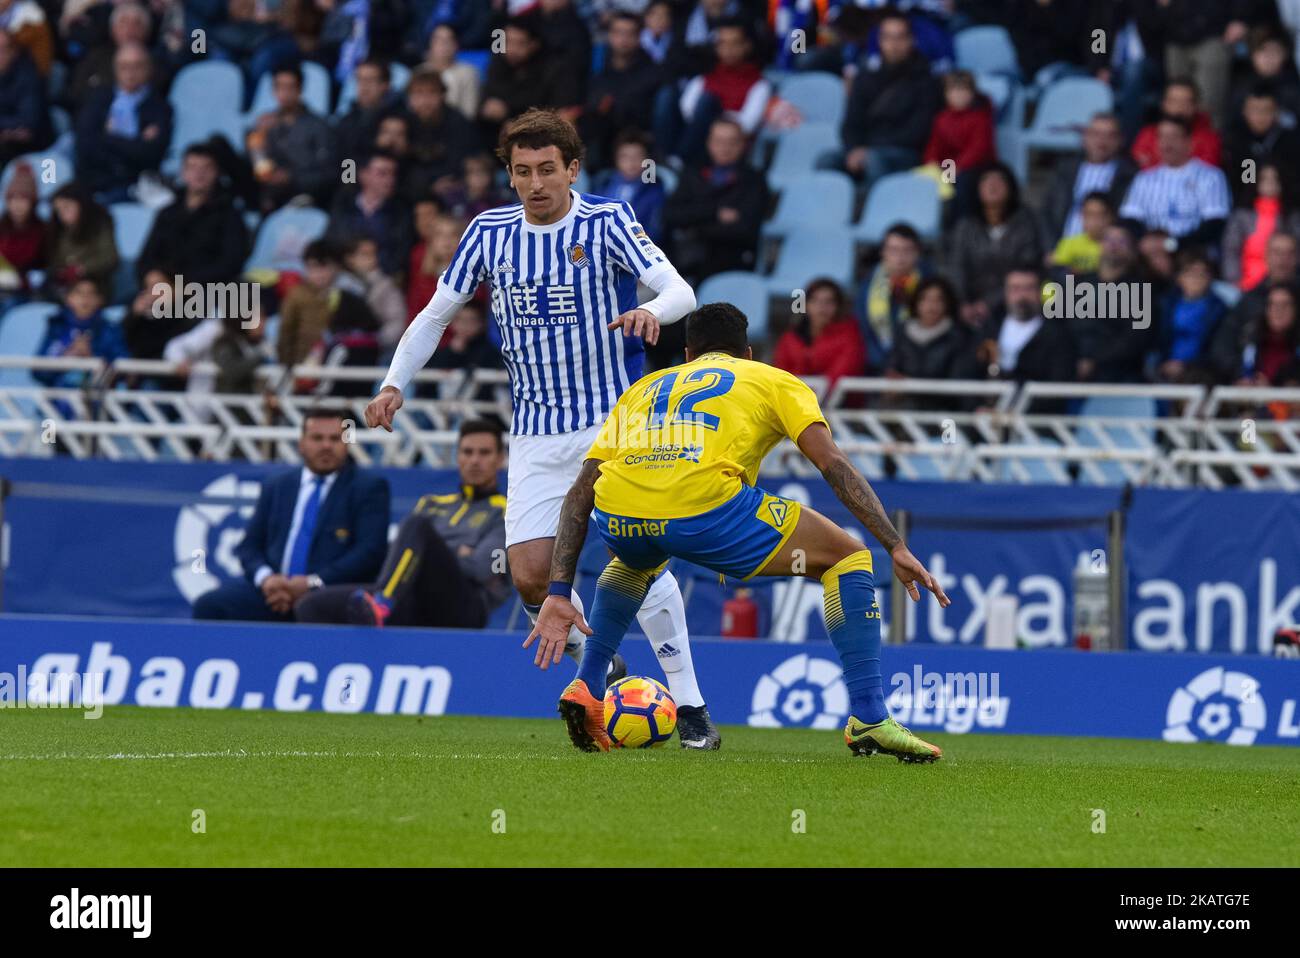 Oyarzabal de la Real Sociedad duela por el balón con Michel de U D Las  Palmas durante el partido de fútbol de la liga española entre Real Sociedad  y U D Las